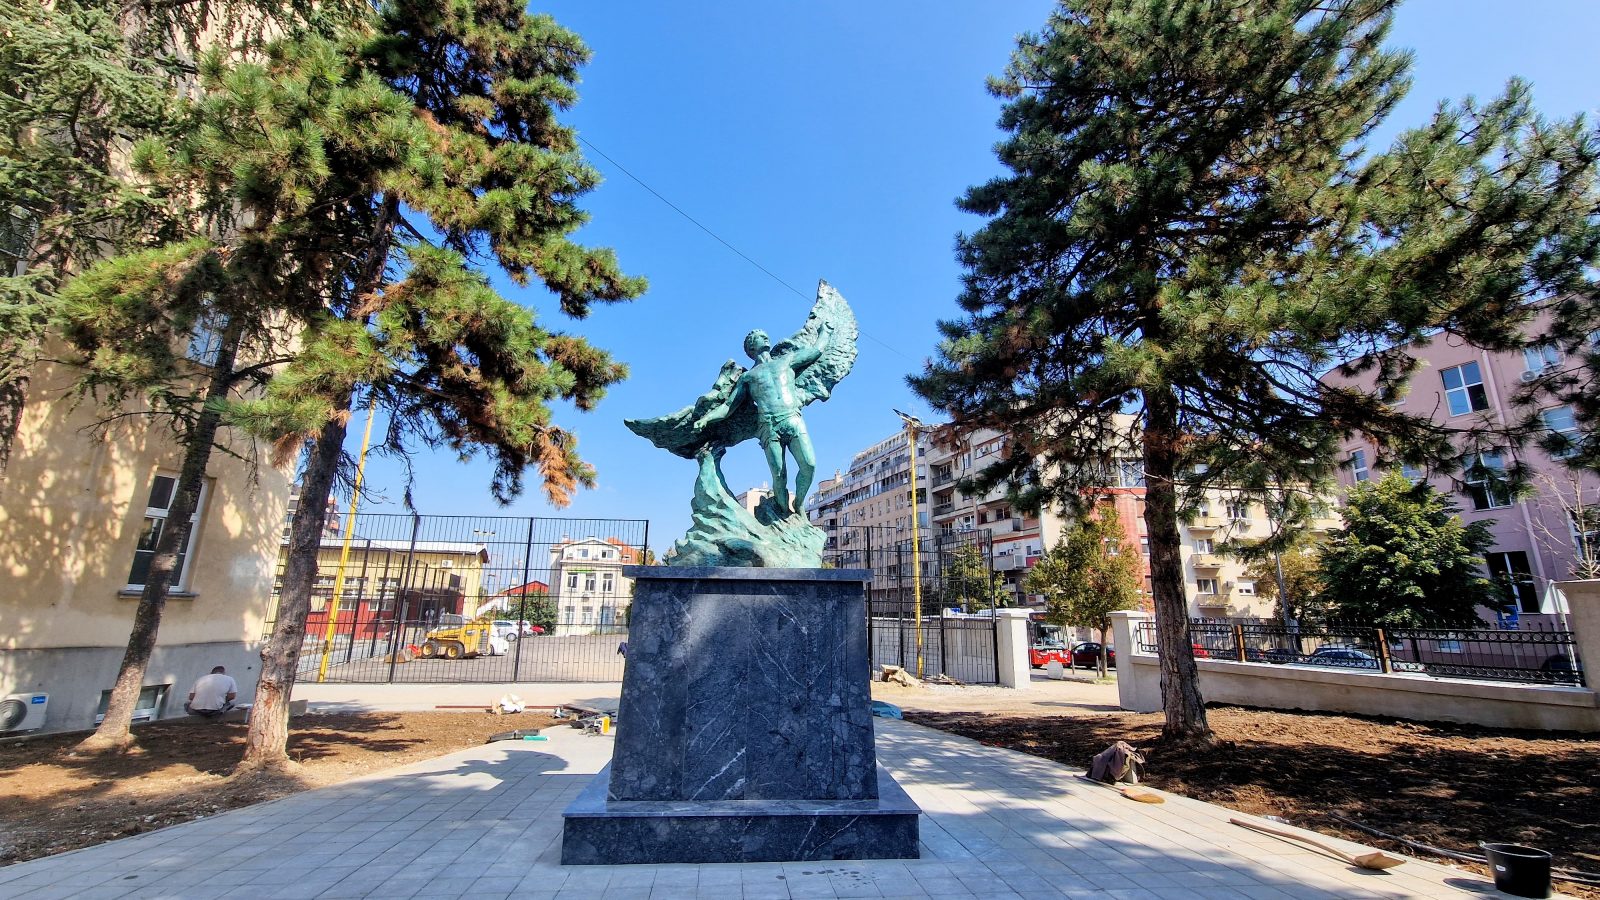 [POSLEDNJA VEST] Postavljena nova skulptura Ikara na mestu Jastreba ispred zgrade Vazduhoplovne akademije na Dorćolu